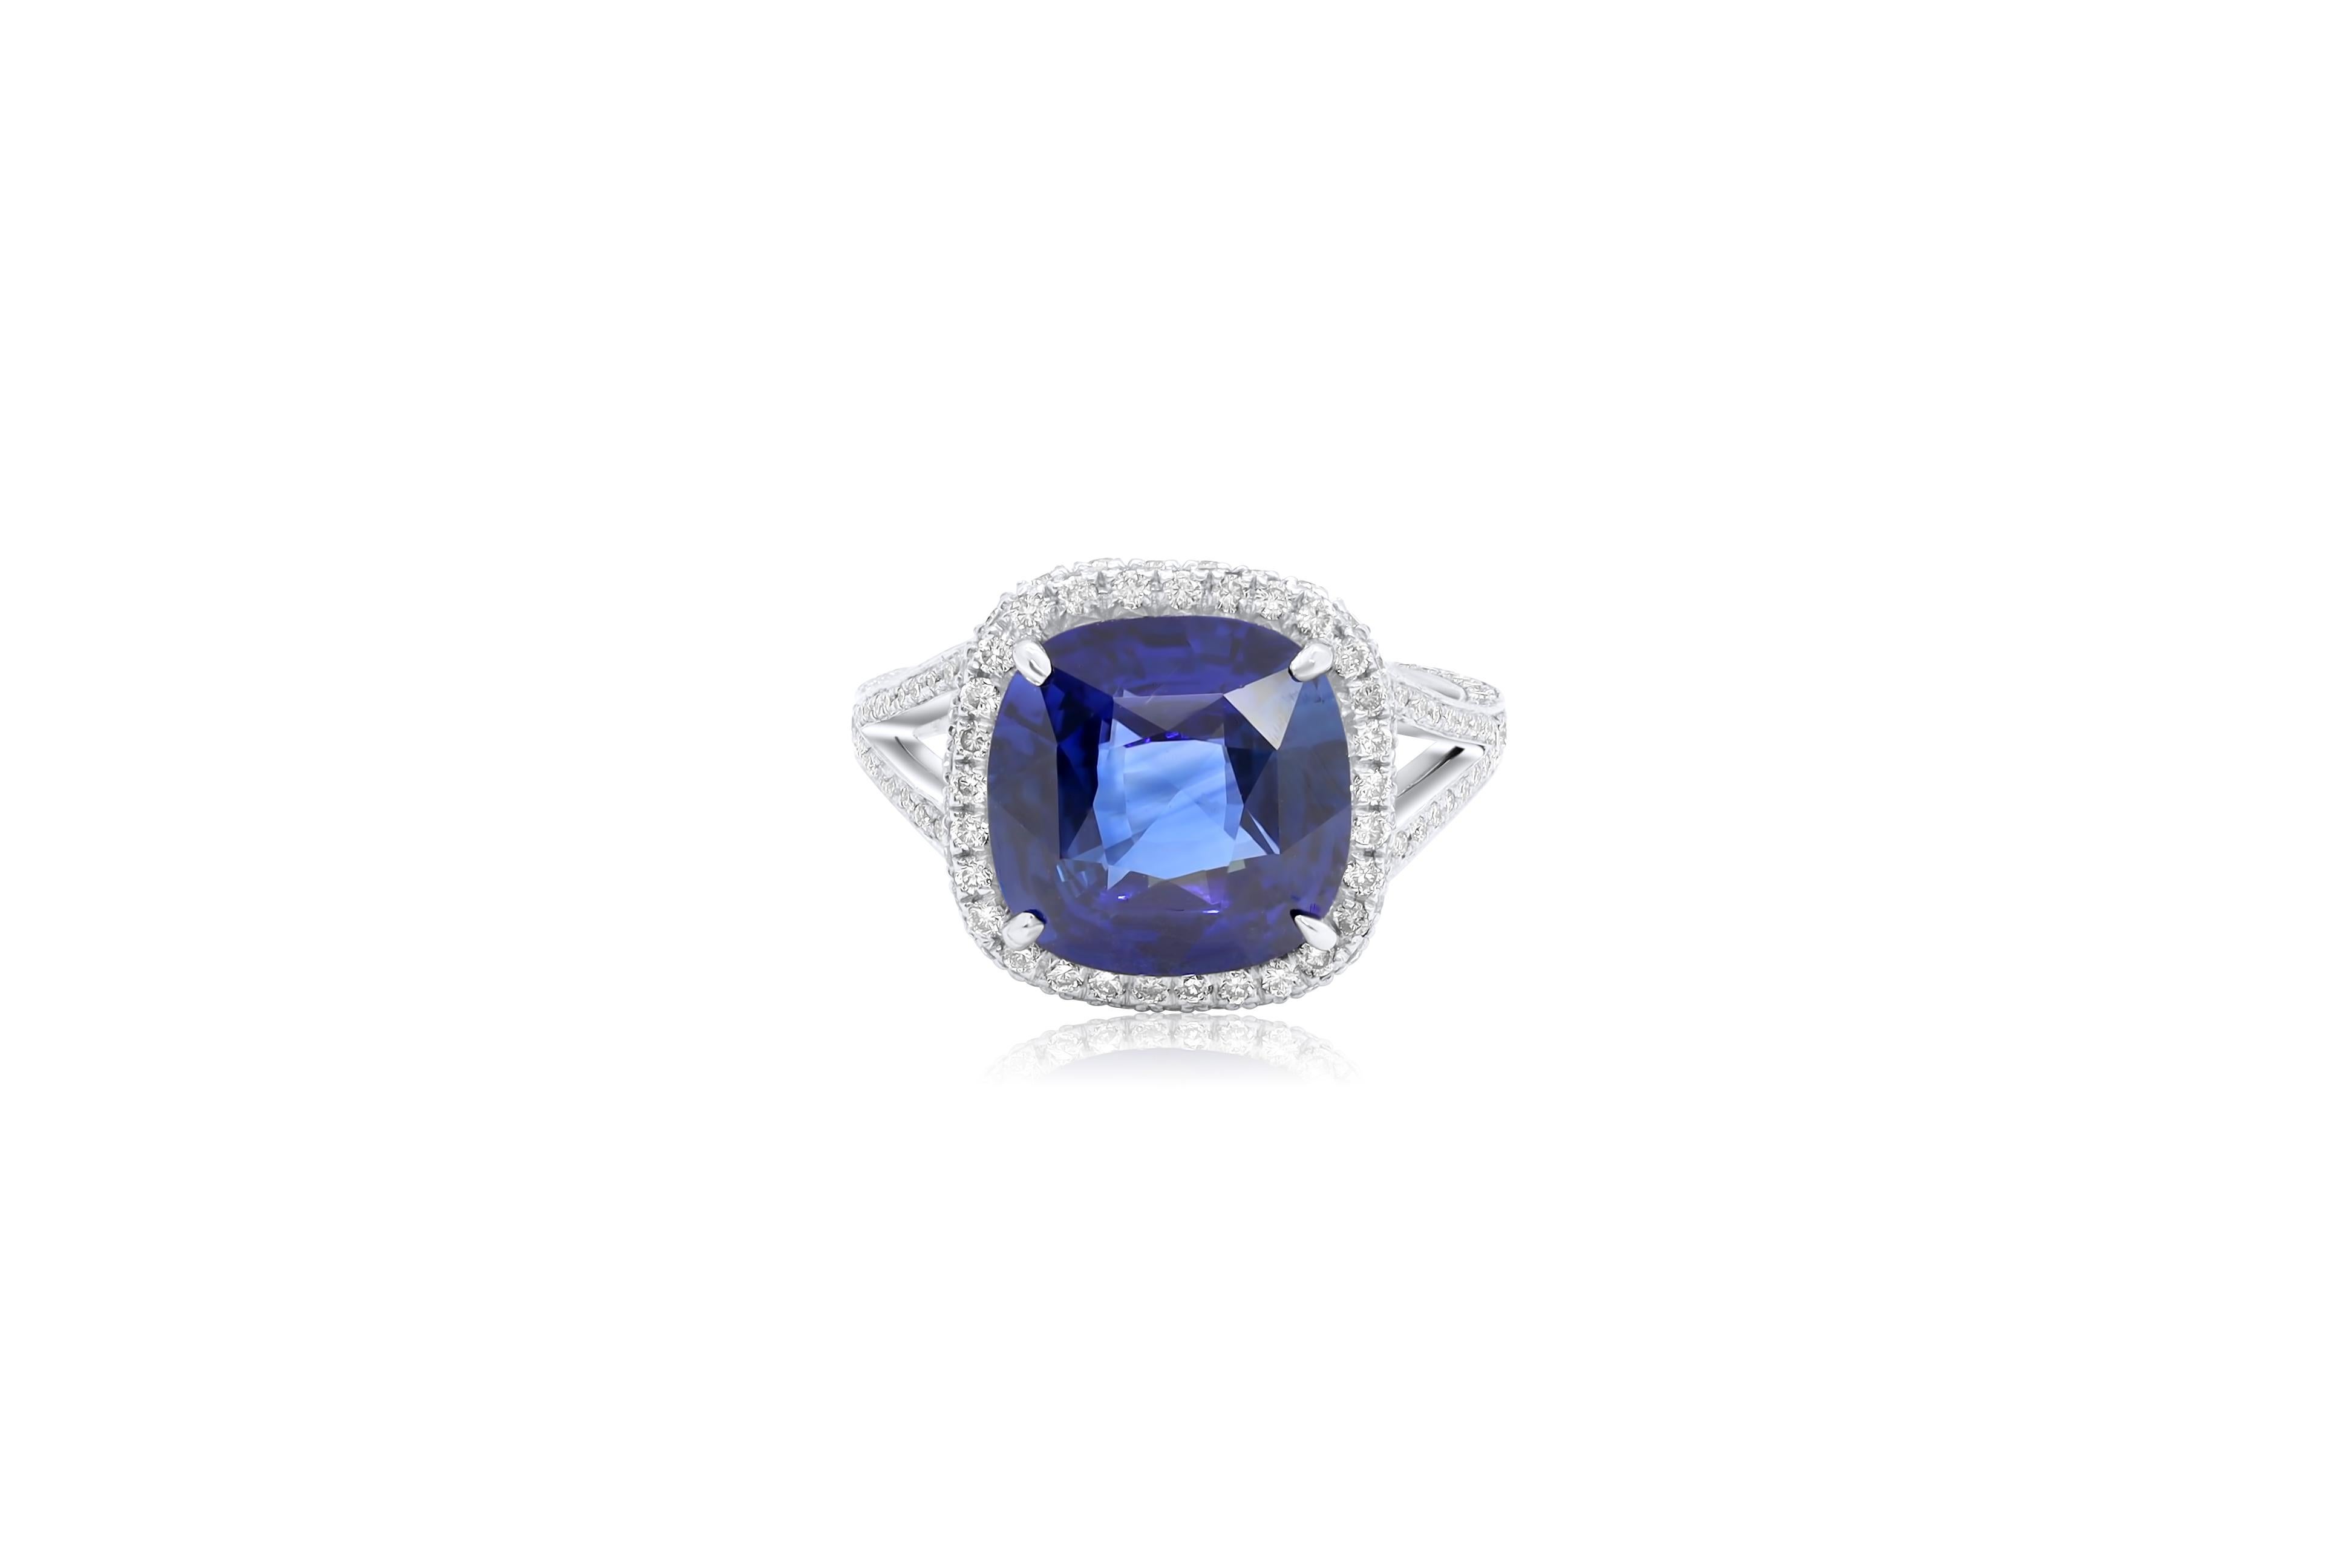 Platin-Saphir-Diamantring mit einem natürlichen Ceylon-Saphir im Kissenschliff von 6,99 Karat aus Sri Lanka (C.DUNAIGRE CERTIFIED#CDC2108201), besetzt mit 1,64 Karat Diamanten in einer Halo-Fassung.
Diana M. ist seit über 35 Jahren ein führender